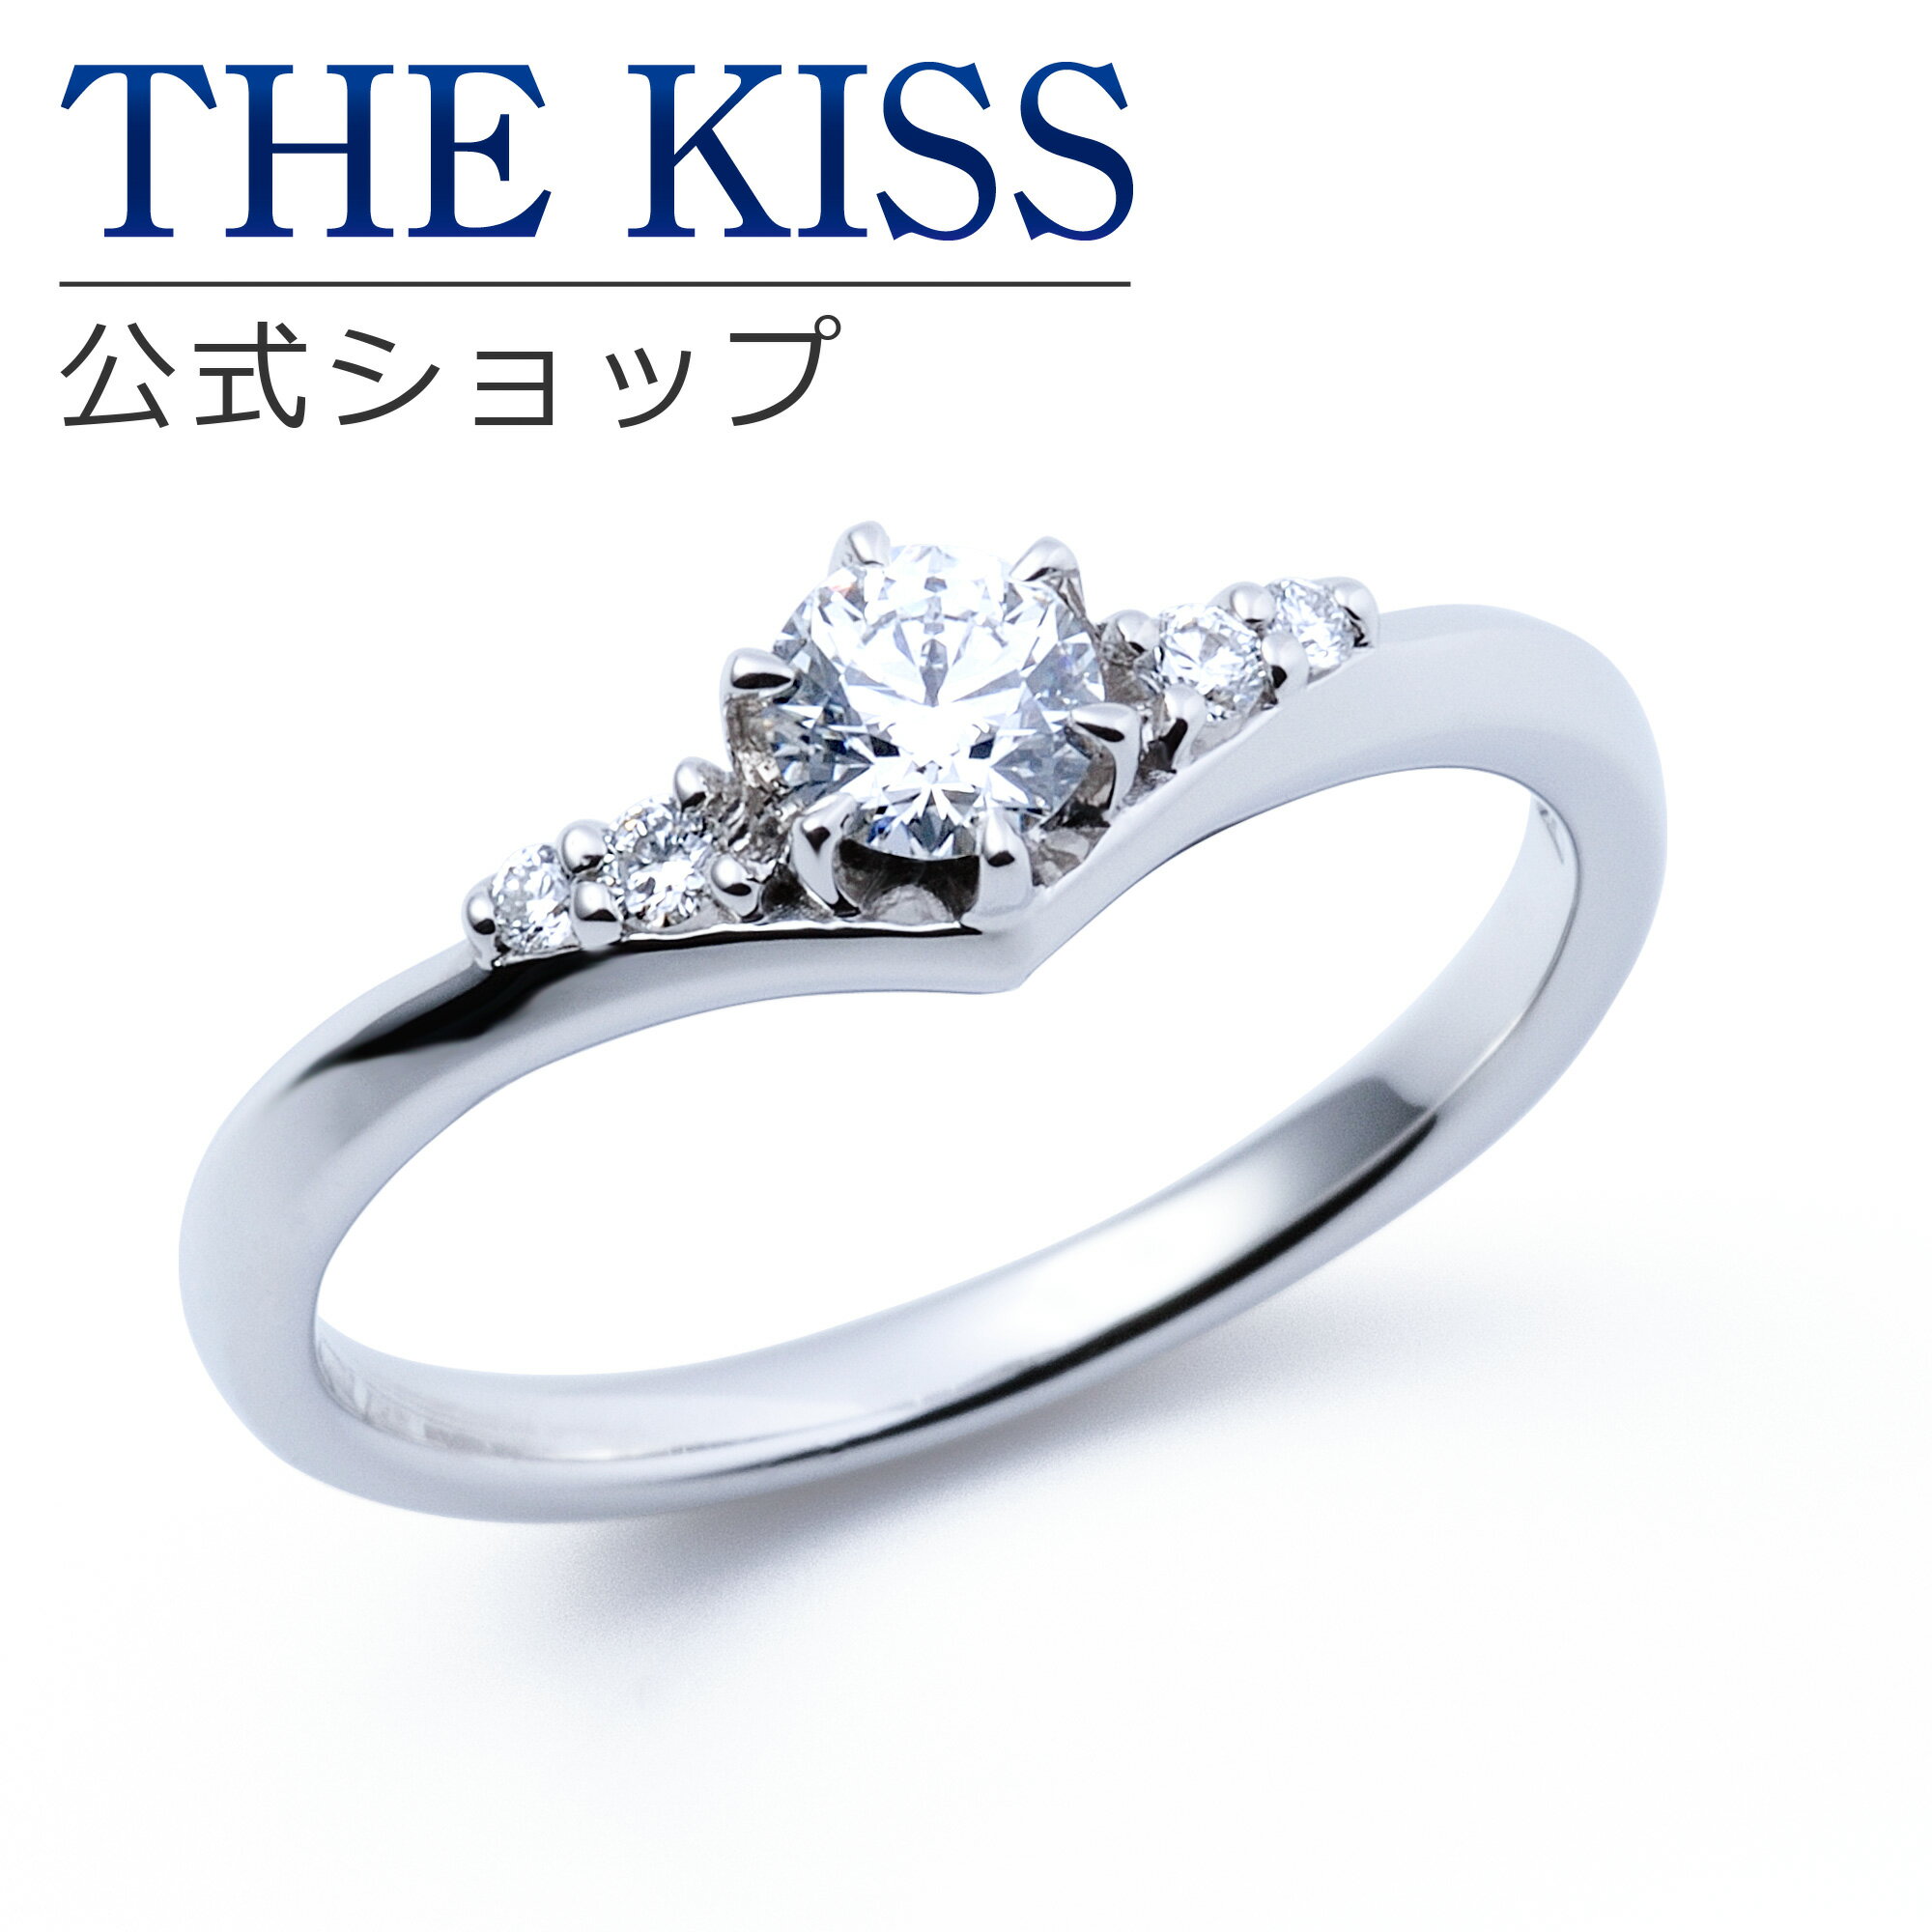 【ラッピング無料】【刻印無料】【THE KISS Anniversary】THE KISS 公式ショップ プラチナ エンゲージリング 婚約指輪 結婚指輪 ブライダルリング プロポーズ THE KISS ザキッス 指輪 6062103130 シンプル ブライダル 鑑定書付 ダイヤモンド【0.30ct F VS2 EX】